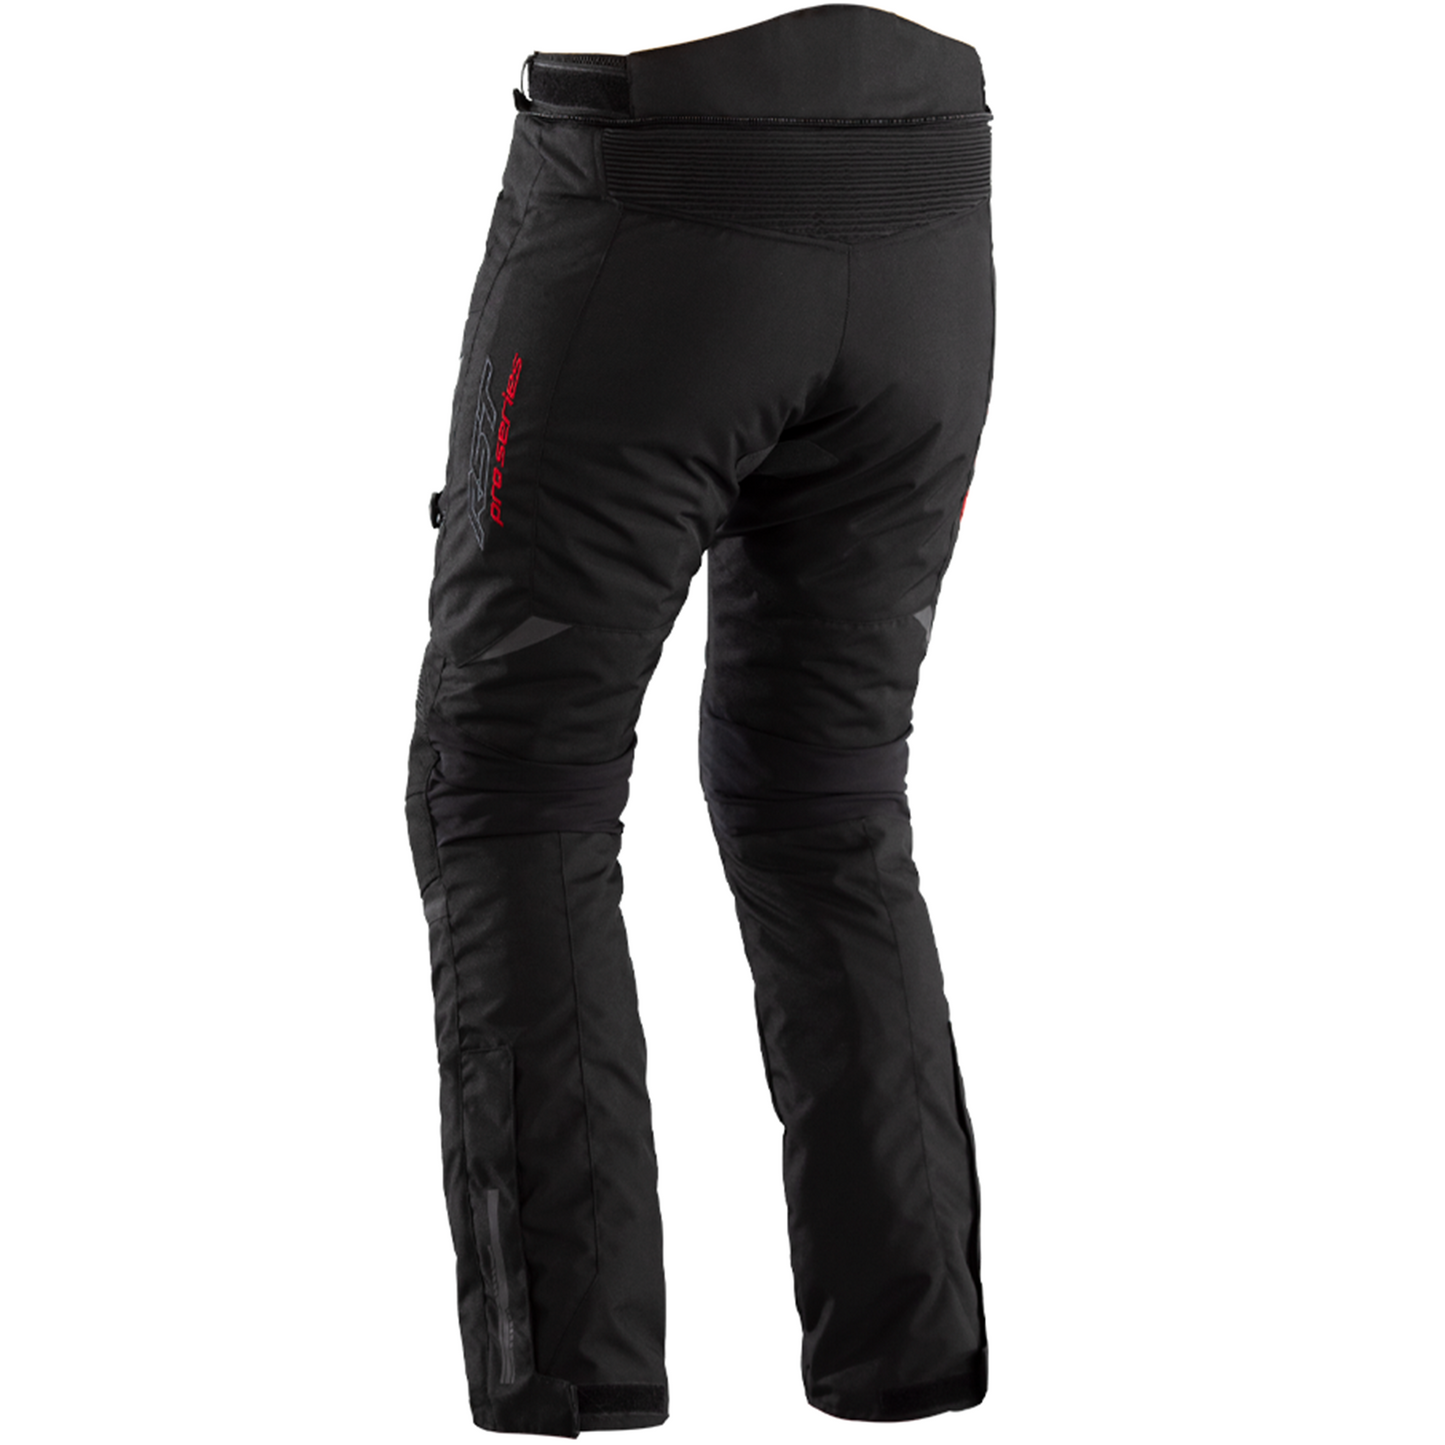 RST Pro Series Paragon 6 Textile Jeans - Black - Short Leg